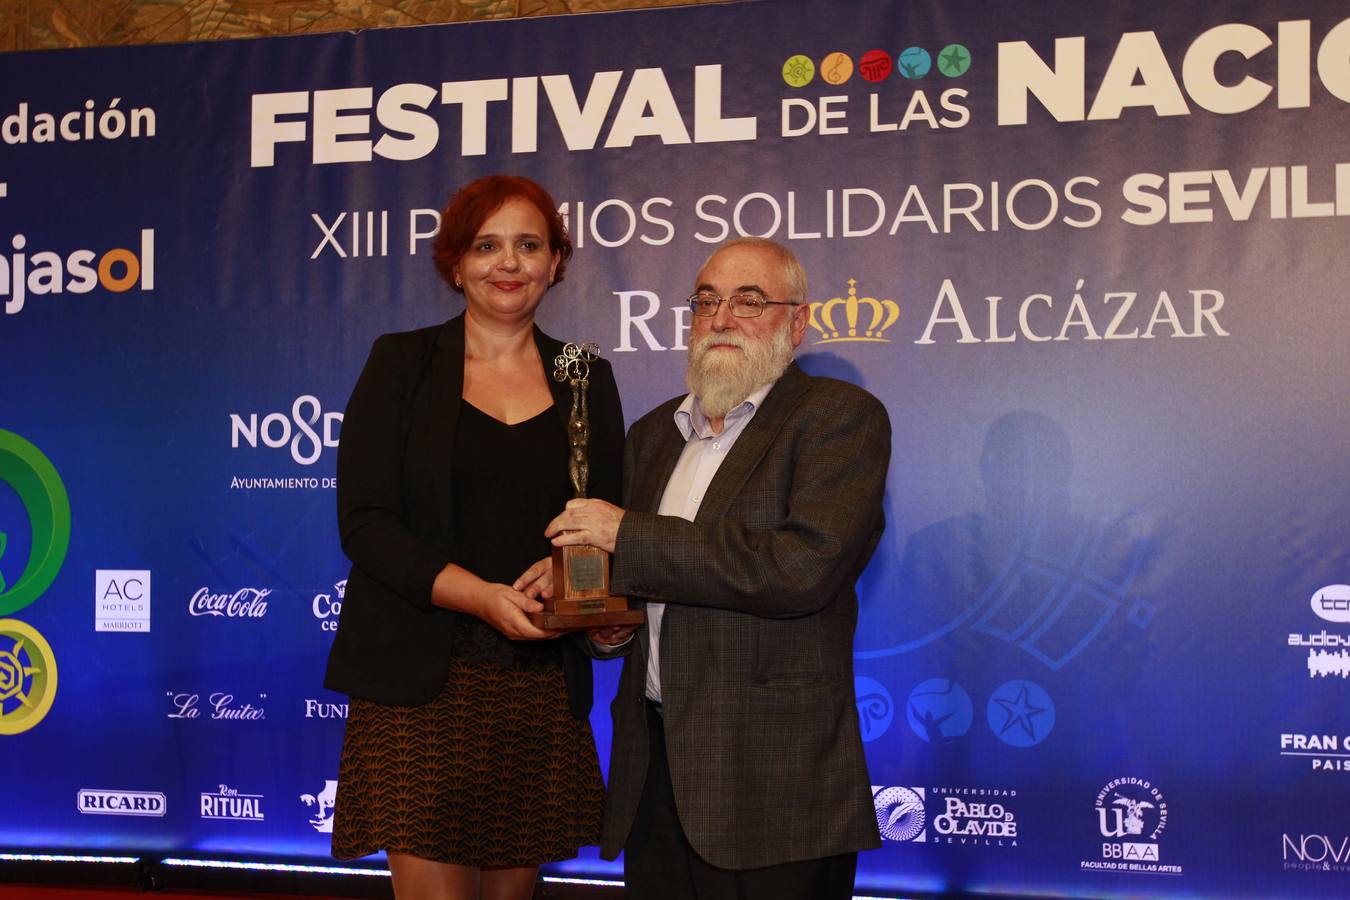 El Festival de las Naciones entrega sus XIII Premios Solidarios